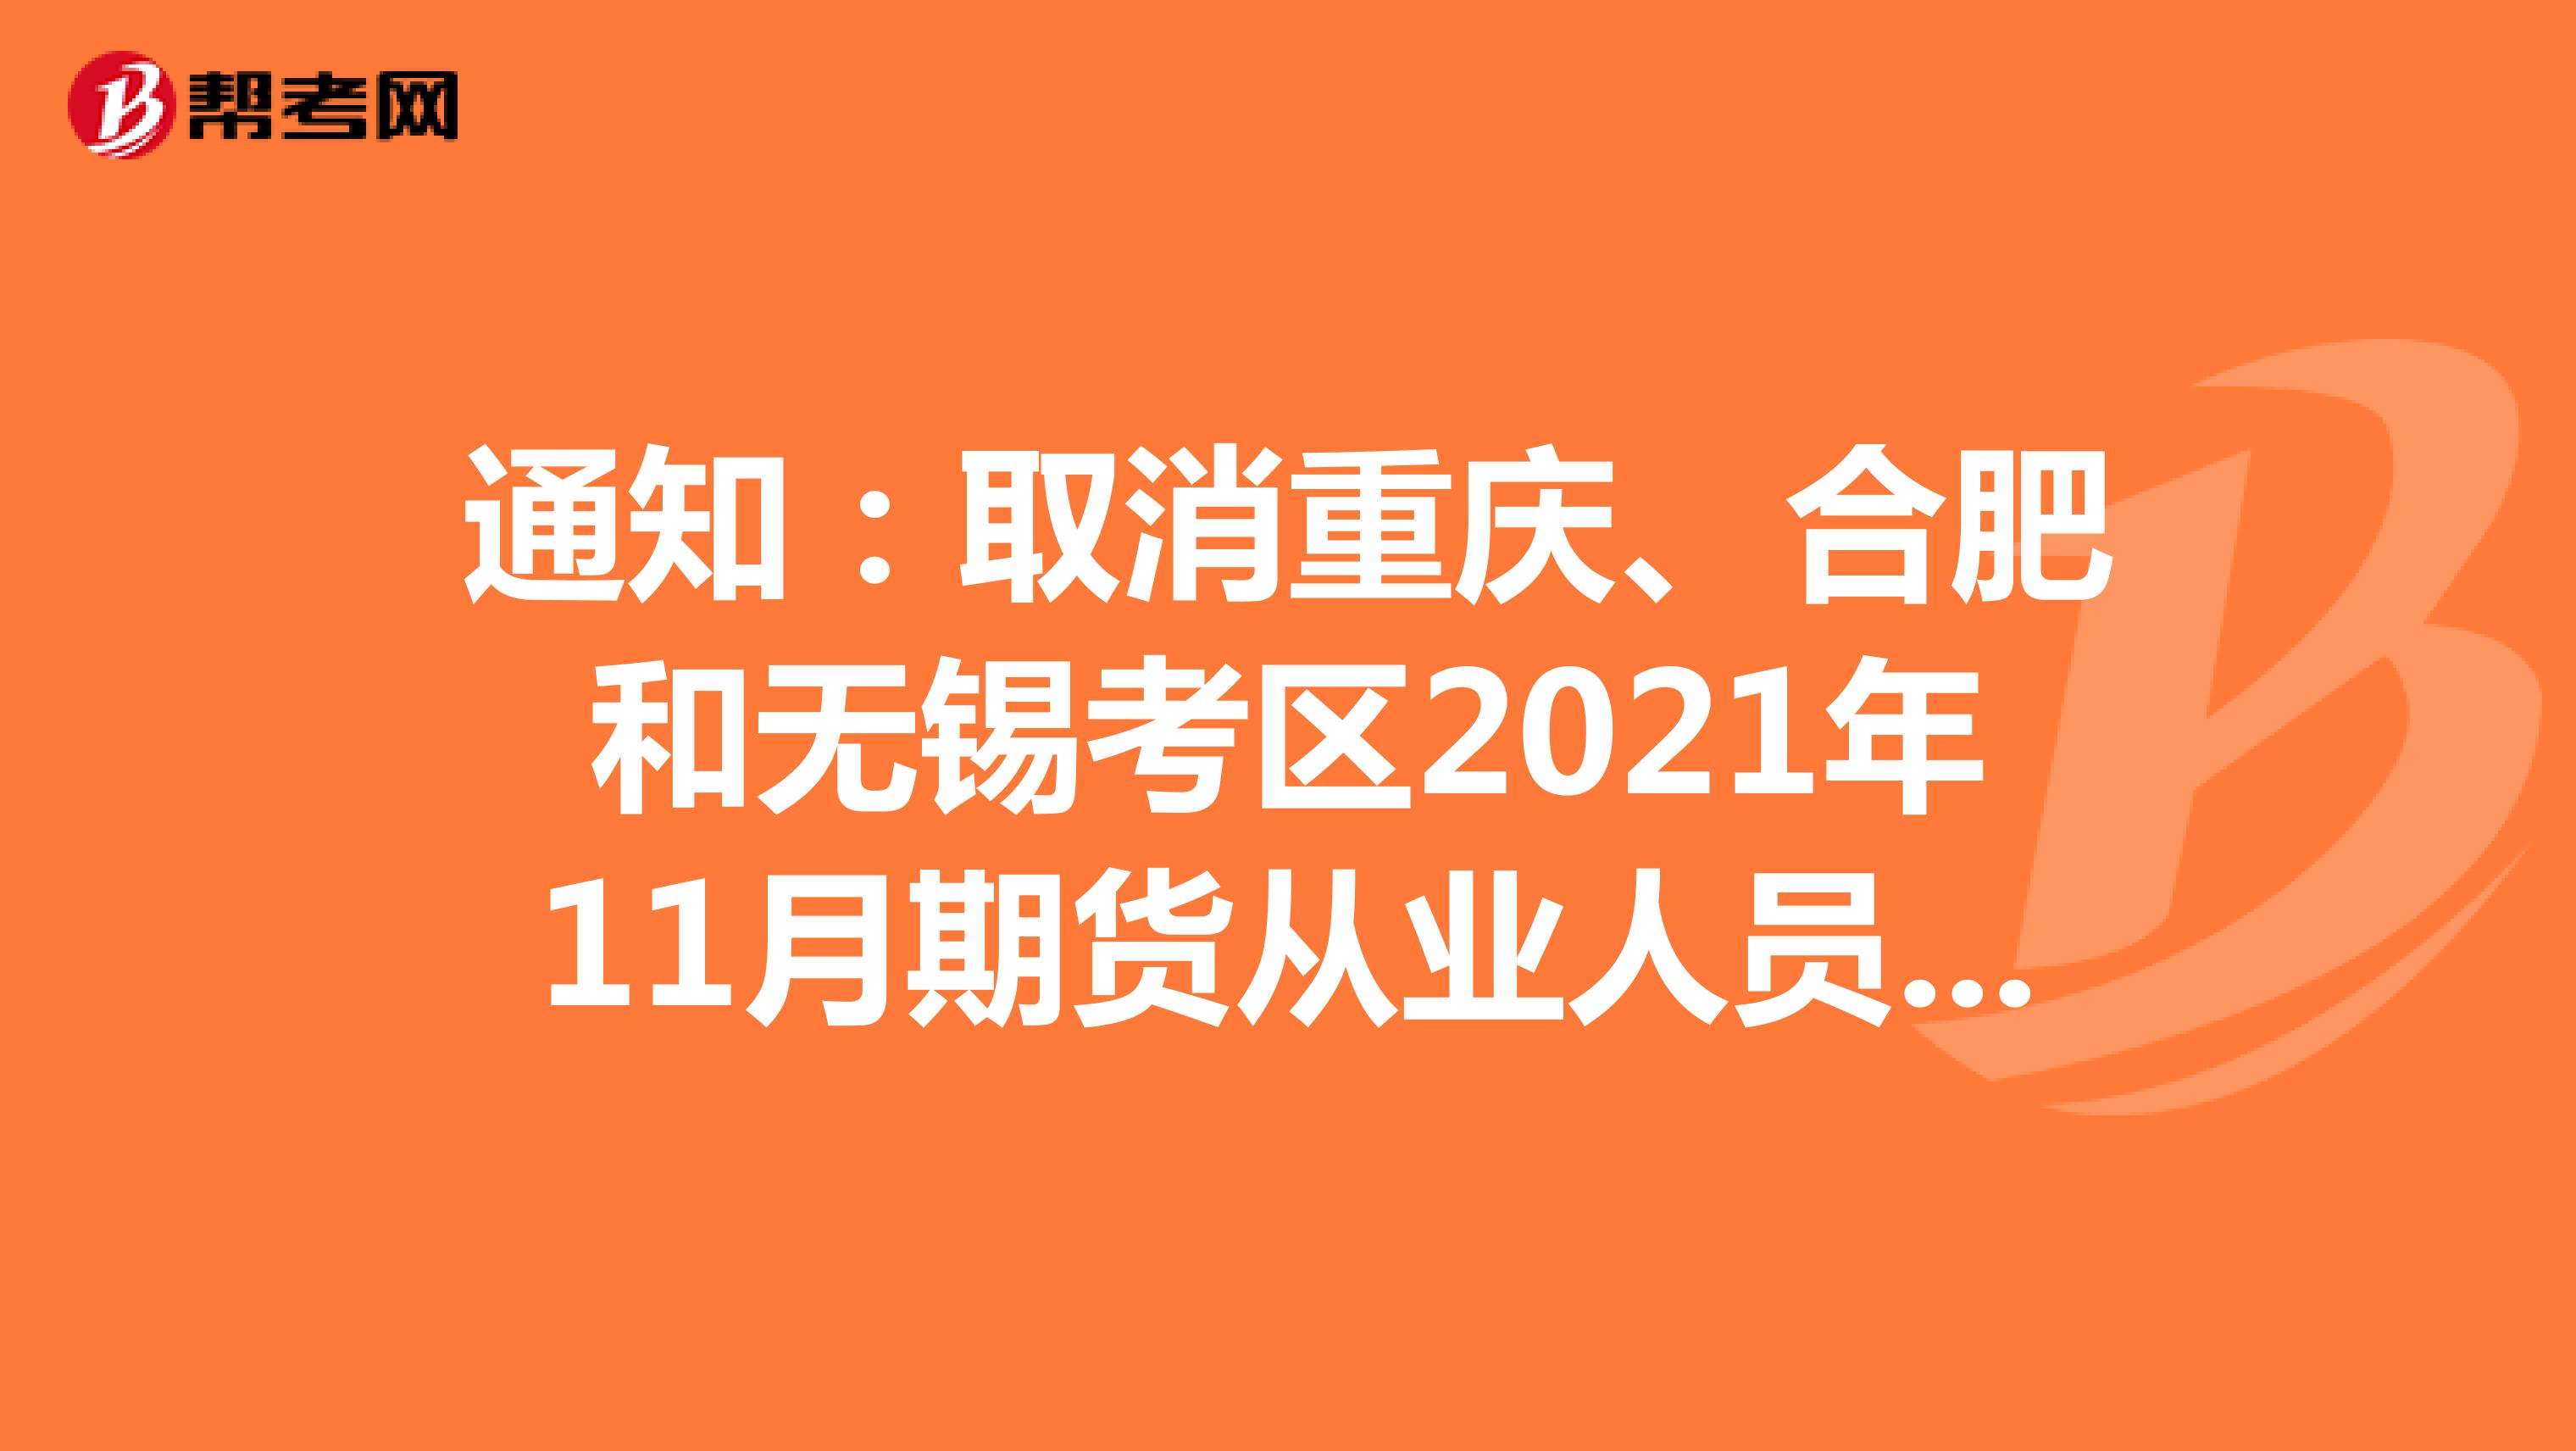 通知：取消重庆、合肥和无锡考区2021年11月期货从业人员资格考试